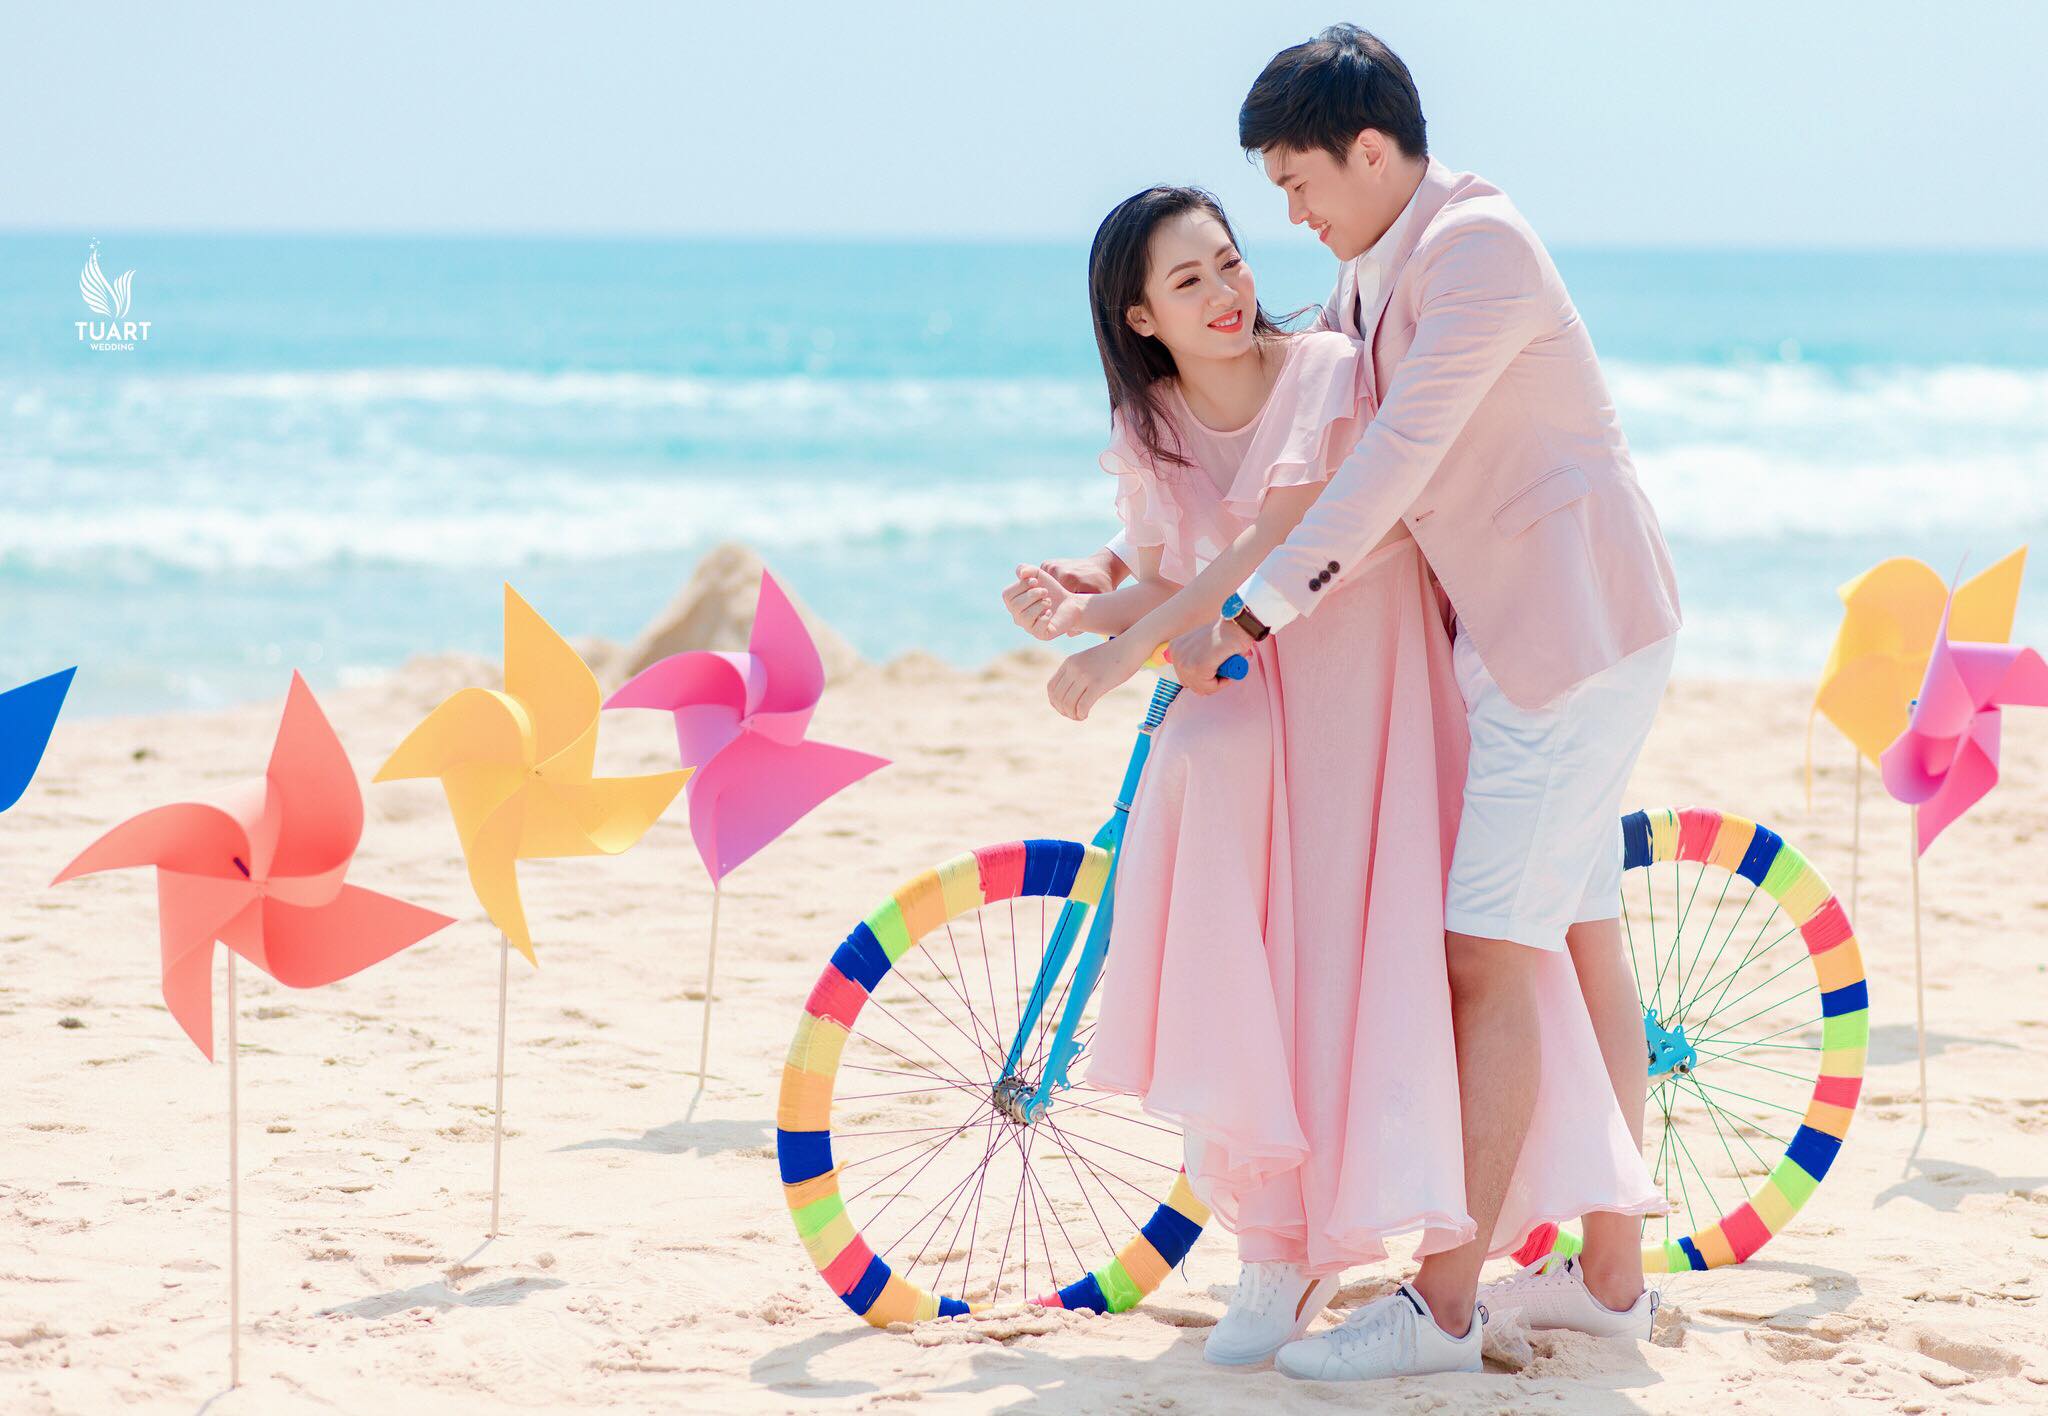 Album chụp ảnh cưới Mỹ Khê-Chong chóng quay khi trời xanh có nắng 8